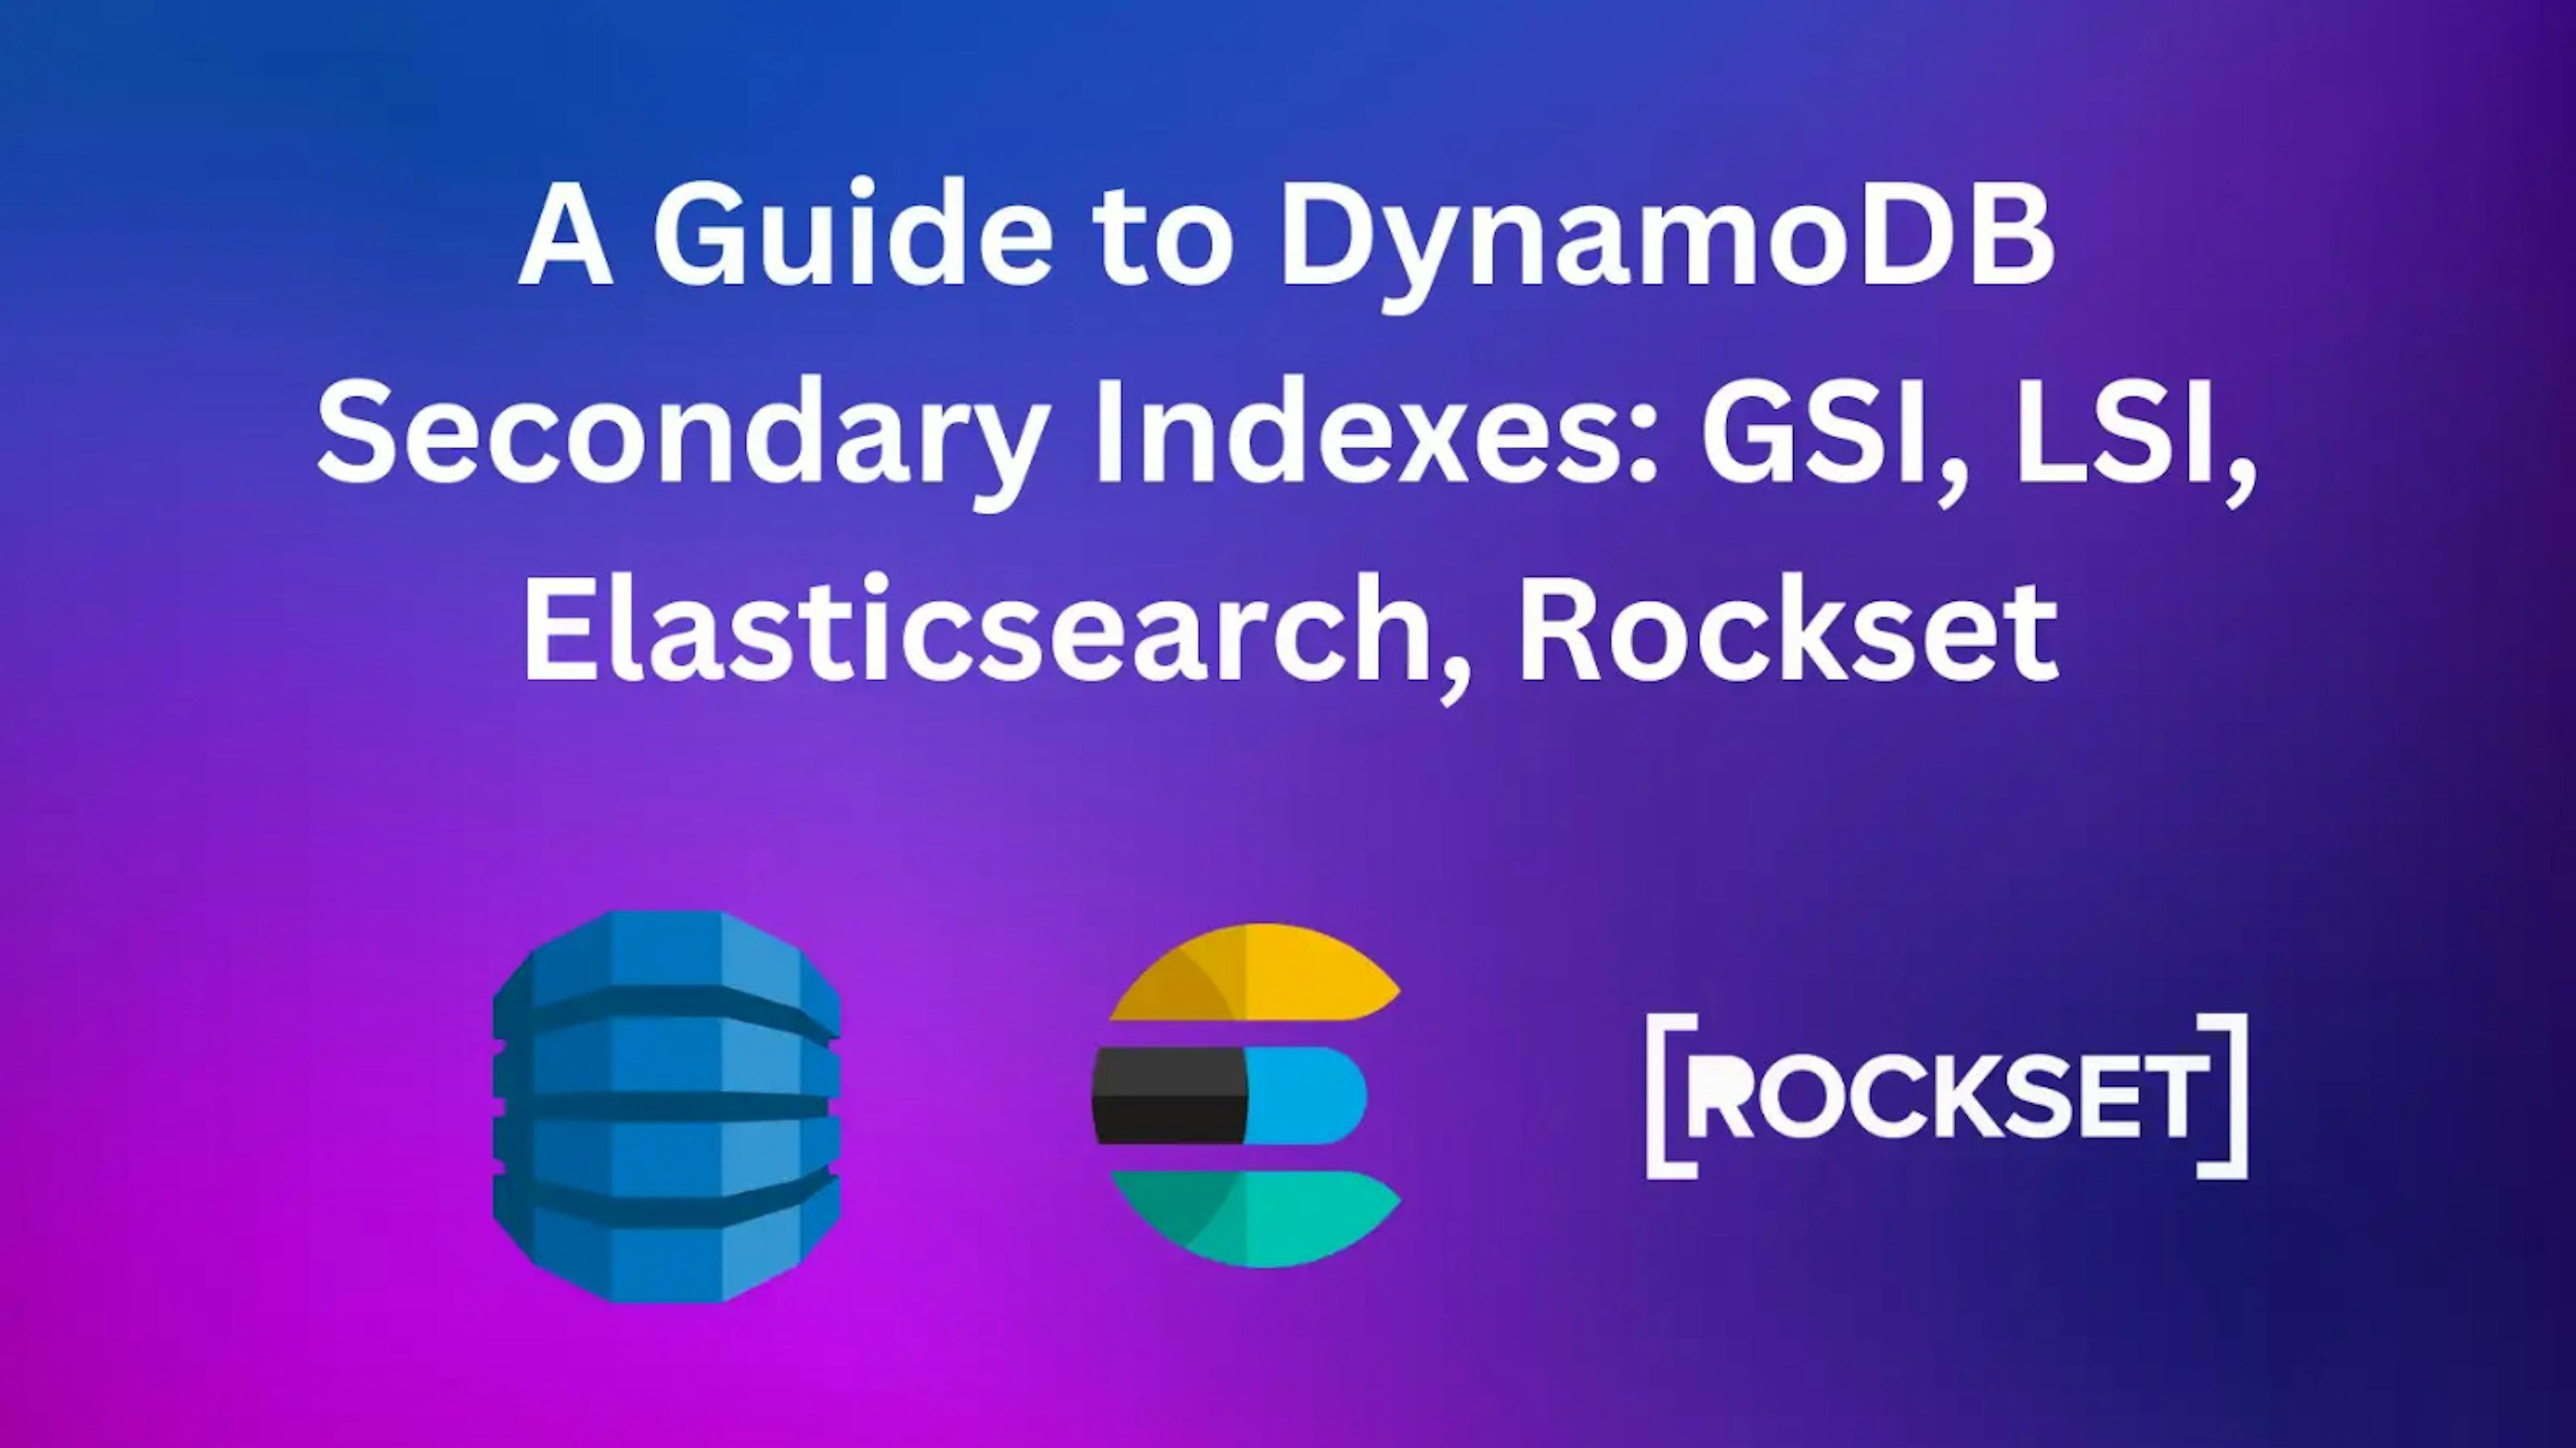 featured image - ¿Cómo se compara Rockset con Elasticsearch en los índices secundarios de DynamoDB?